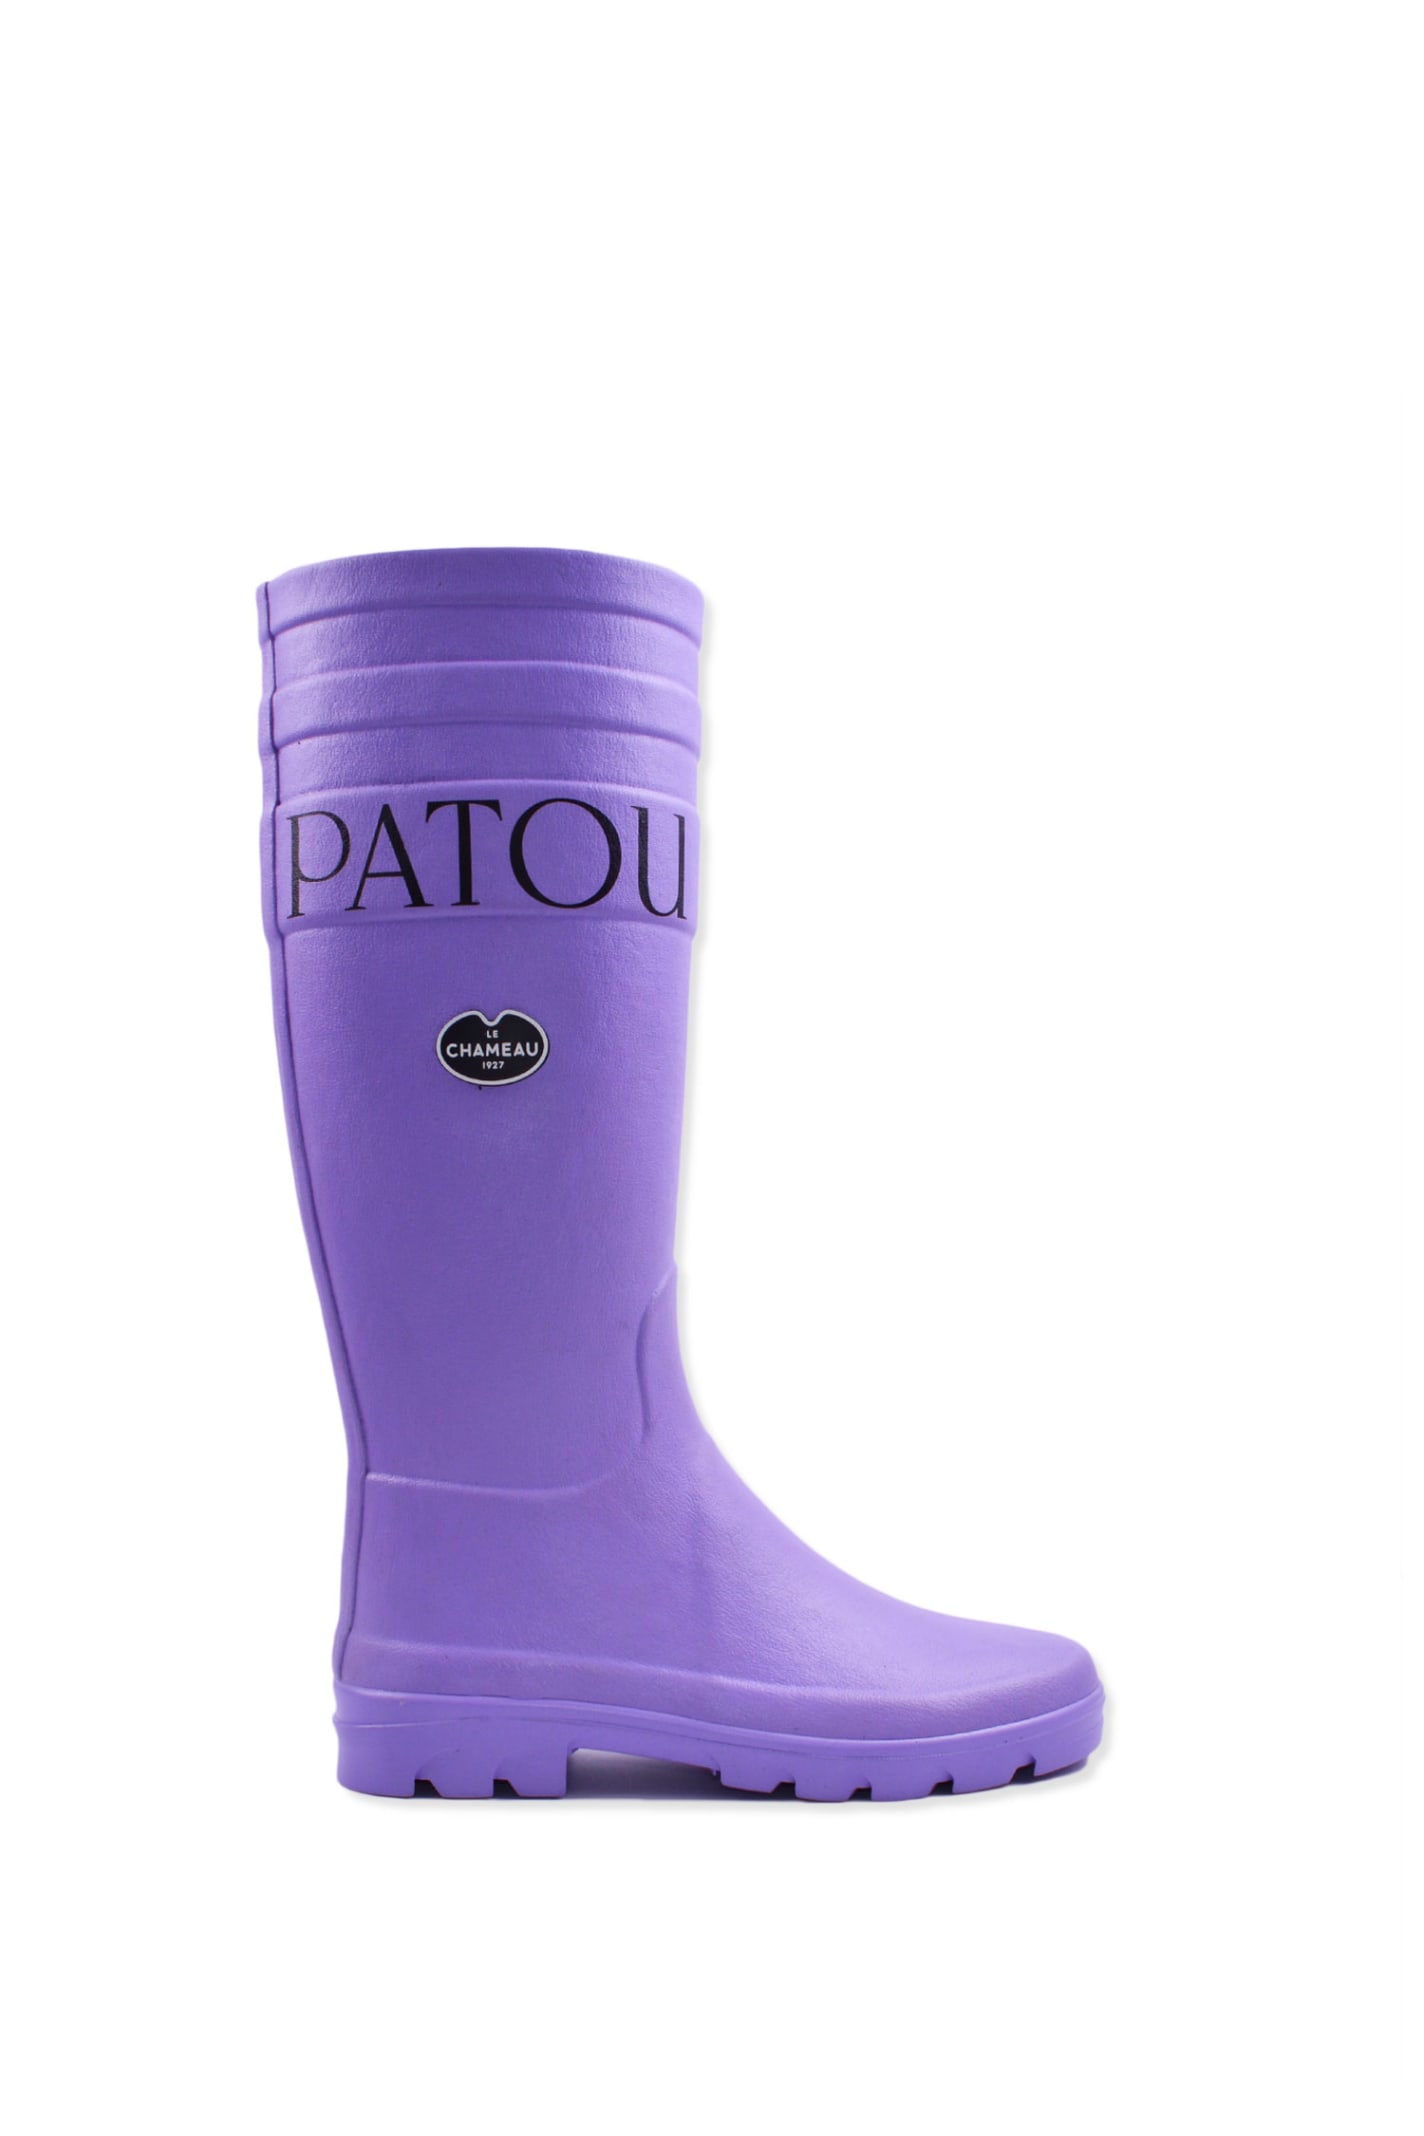 Patou Rain Boot